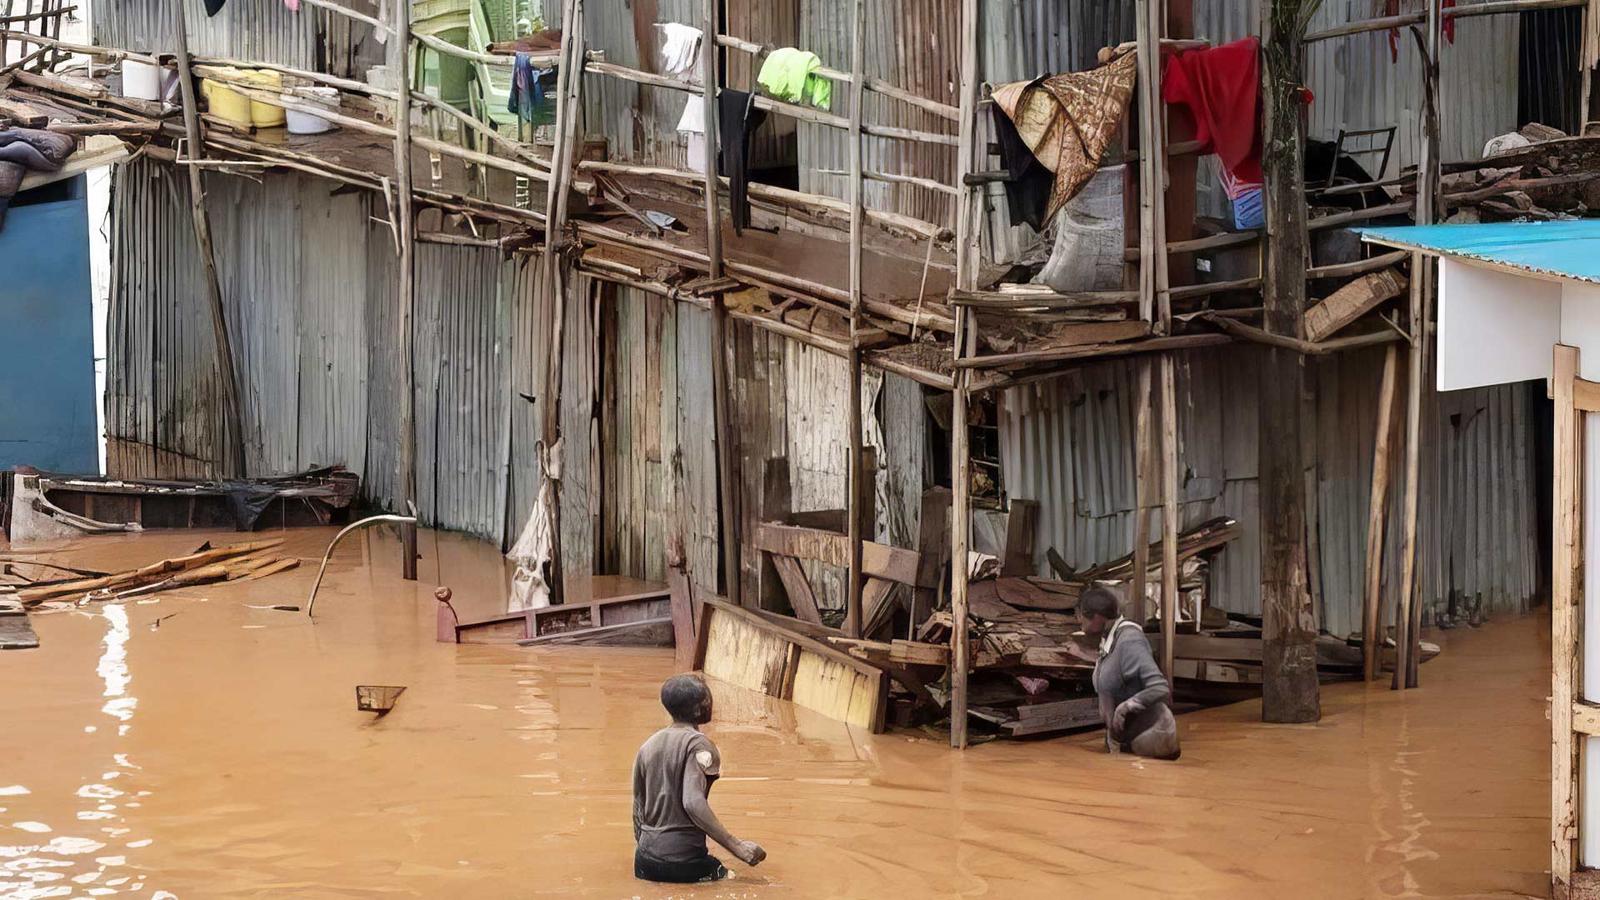 Översvämning i Kenya - två personer vadar i vatten som går upp till midjan, bakom dem syns en stor barack med en massa bråte och två våningar och loftgång. 